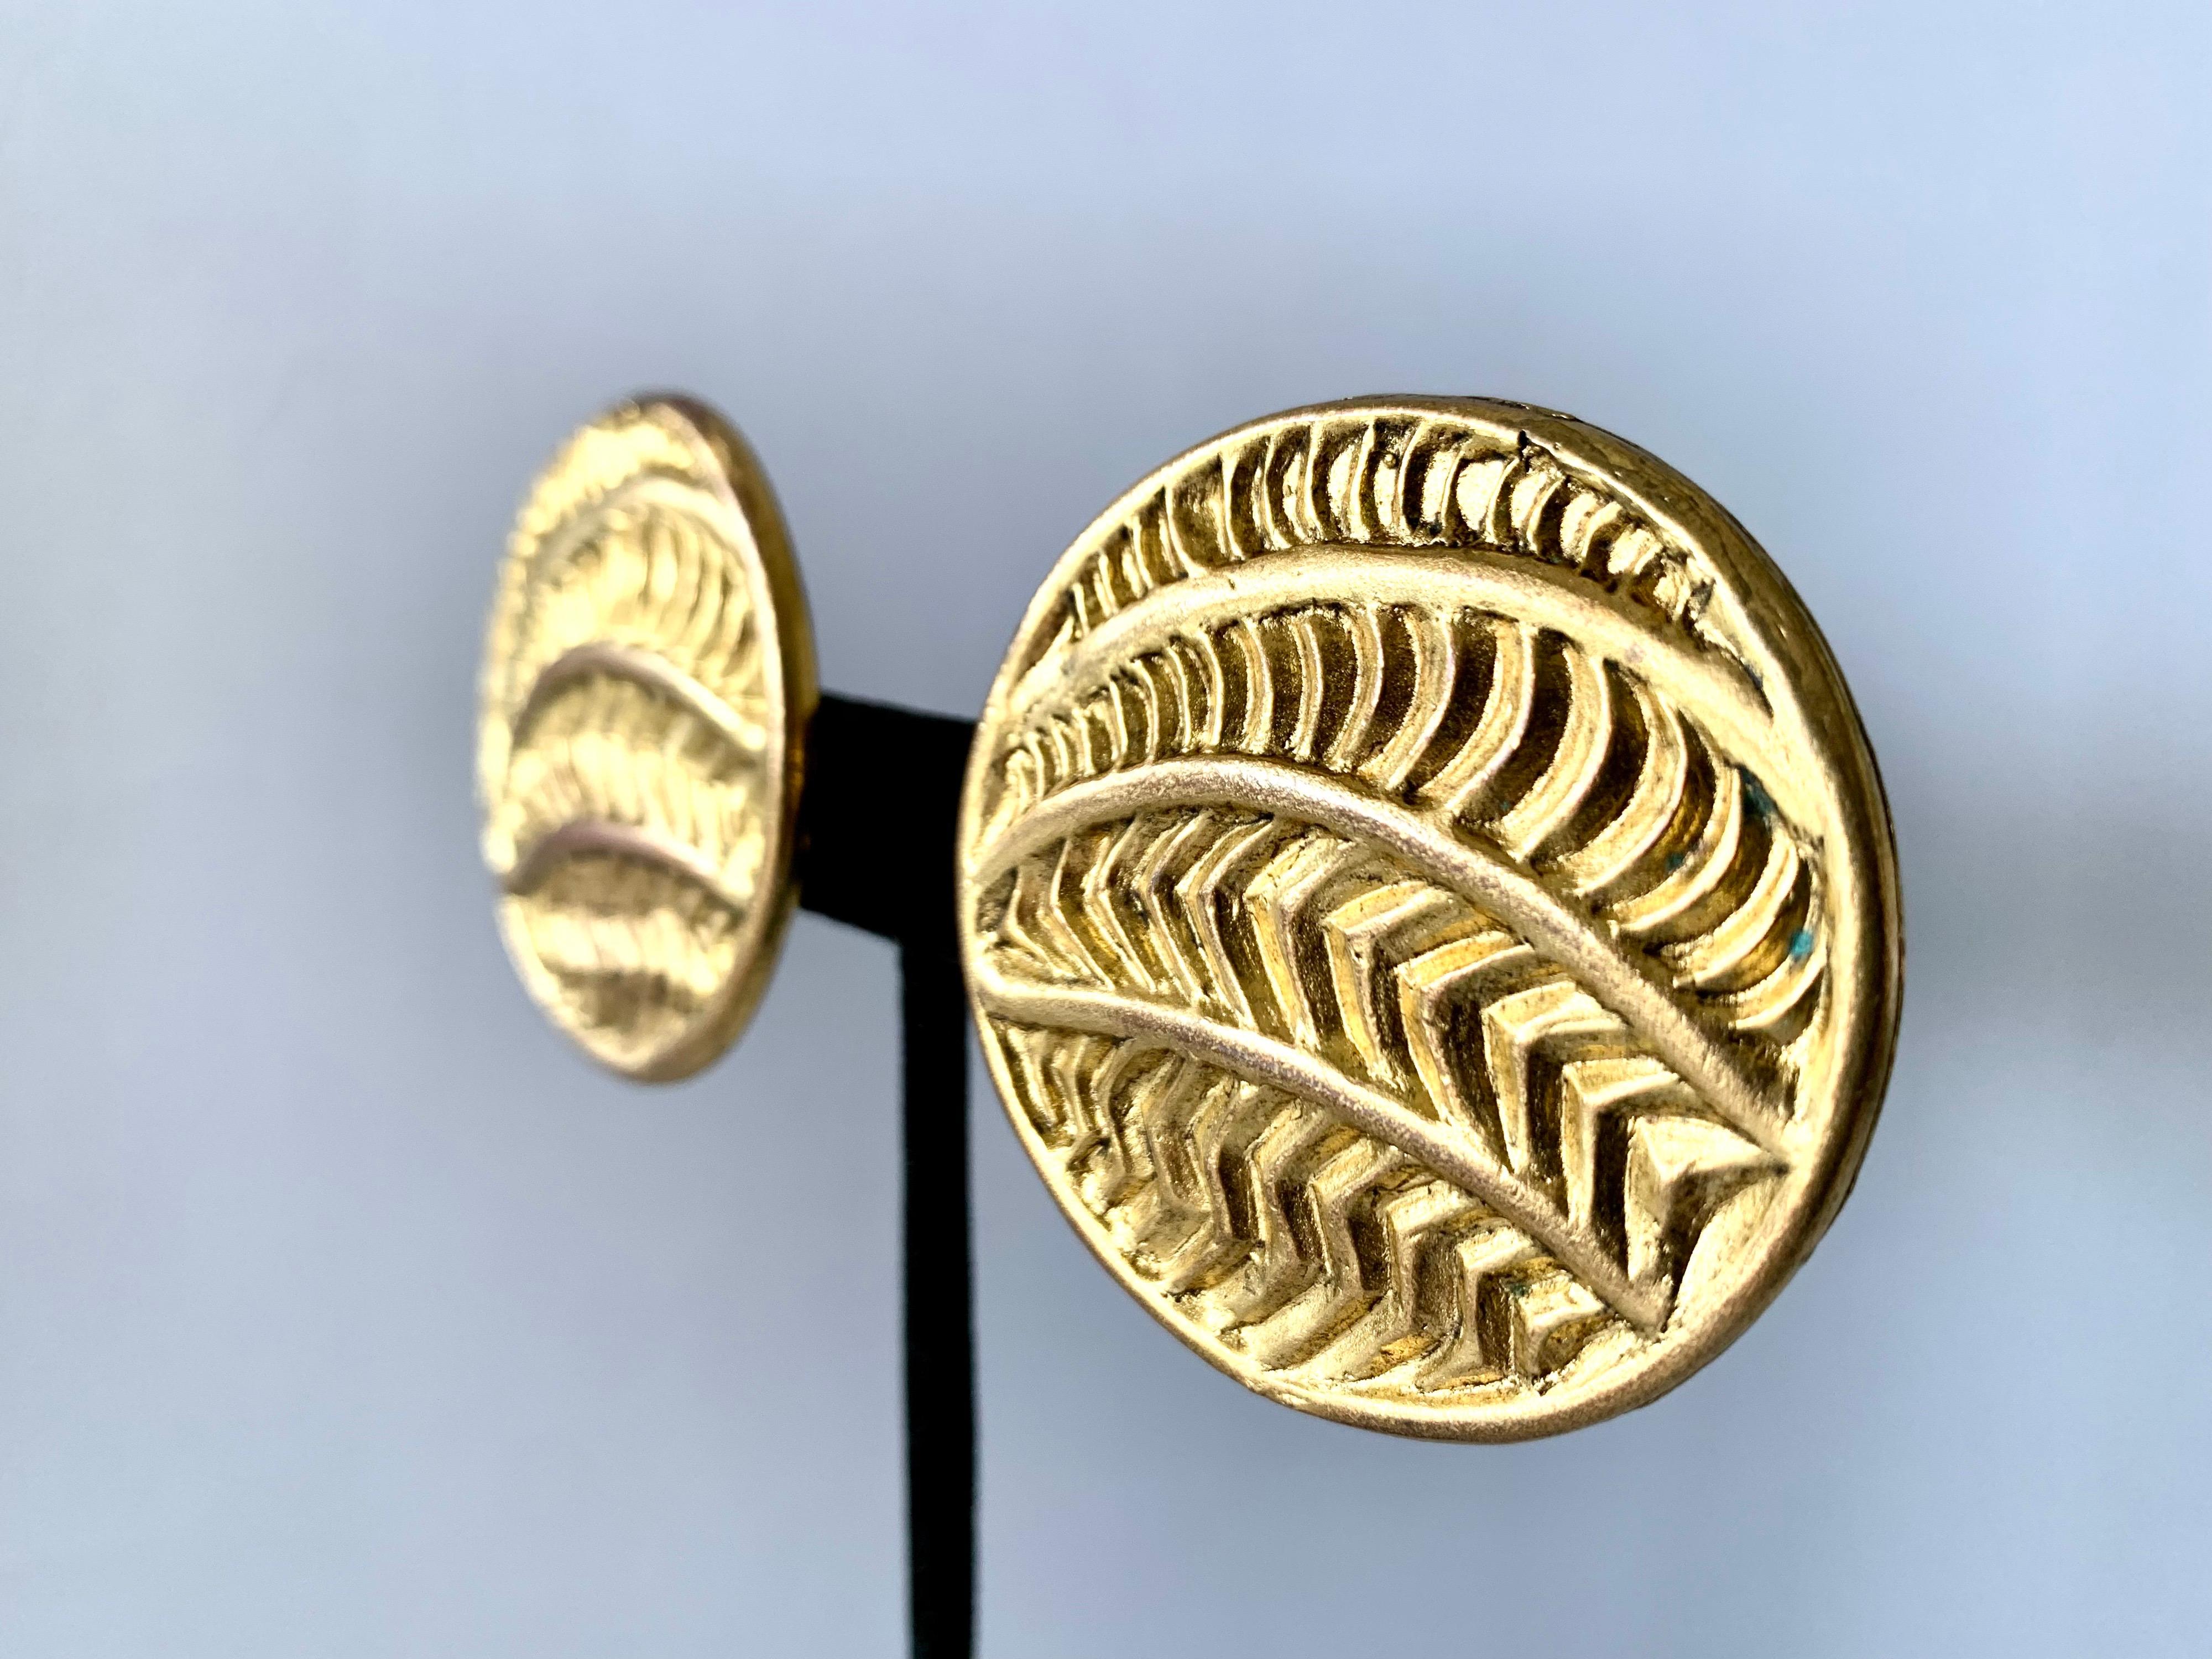 Boucles d'oreilles vintage surdimensionnées en métal doré avec un motif tribal sculpté. Les boucles d'oreilles sont signées Isabel Canovas, circa 1980-1990, fabriquées en France.

Isabel Canovas était une créatrice de bijoux fantaisie de haute